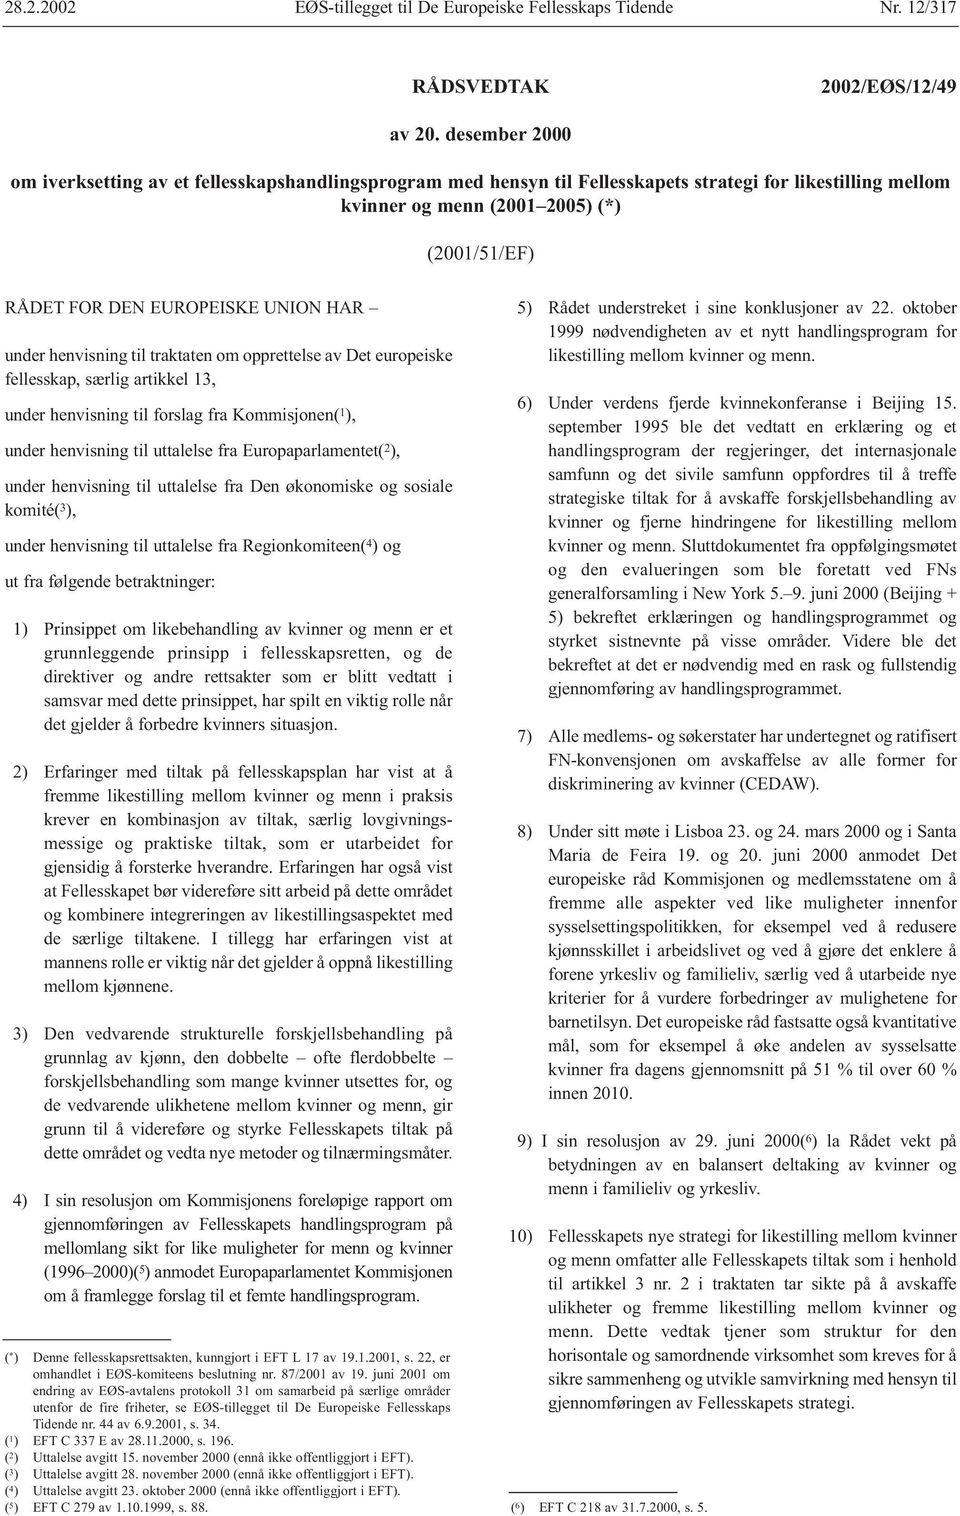 UNION HAR under henvisning til traktaten om opprettelse av Det europeiske fellesskap, særlig artikkel 13, under henvisning til forslag fra Kommisjonen( 1 ), under henvisning til uttalelse fra